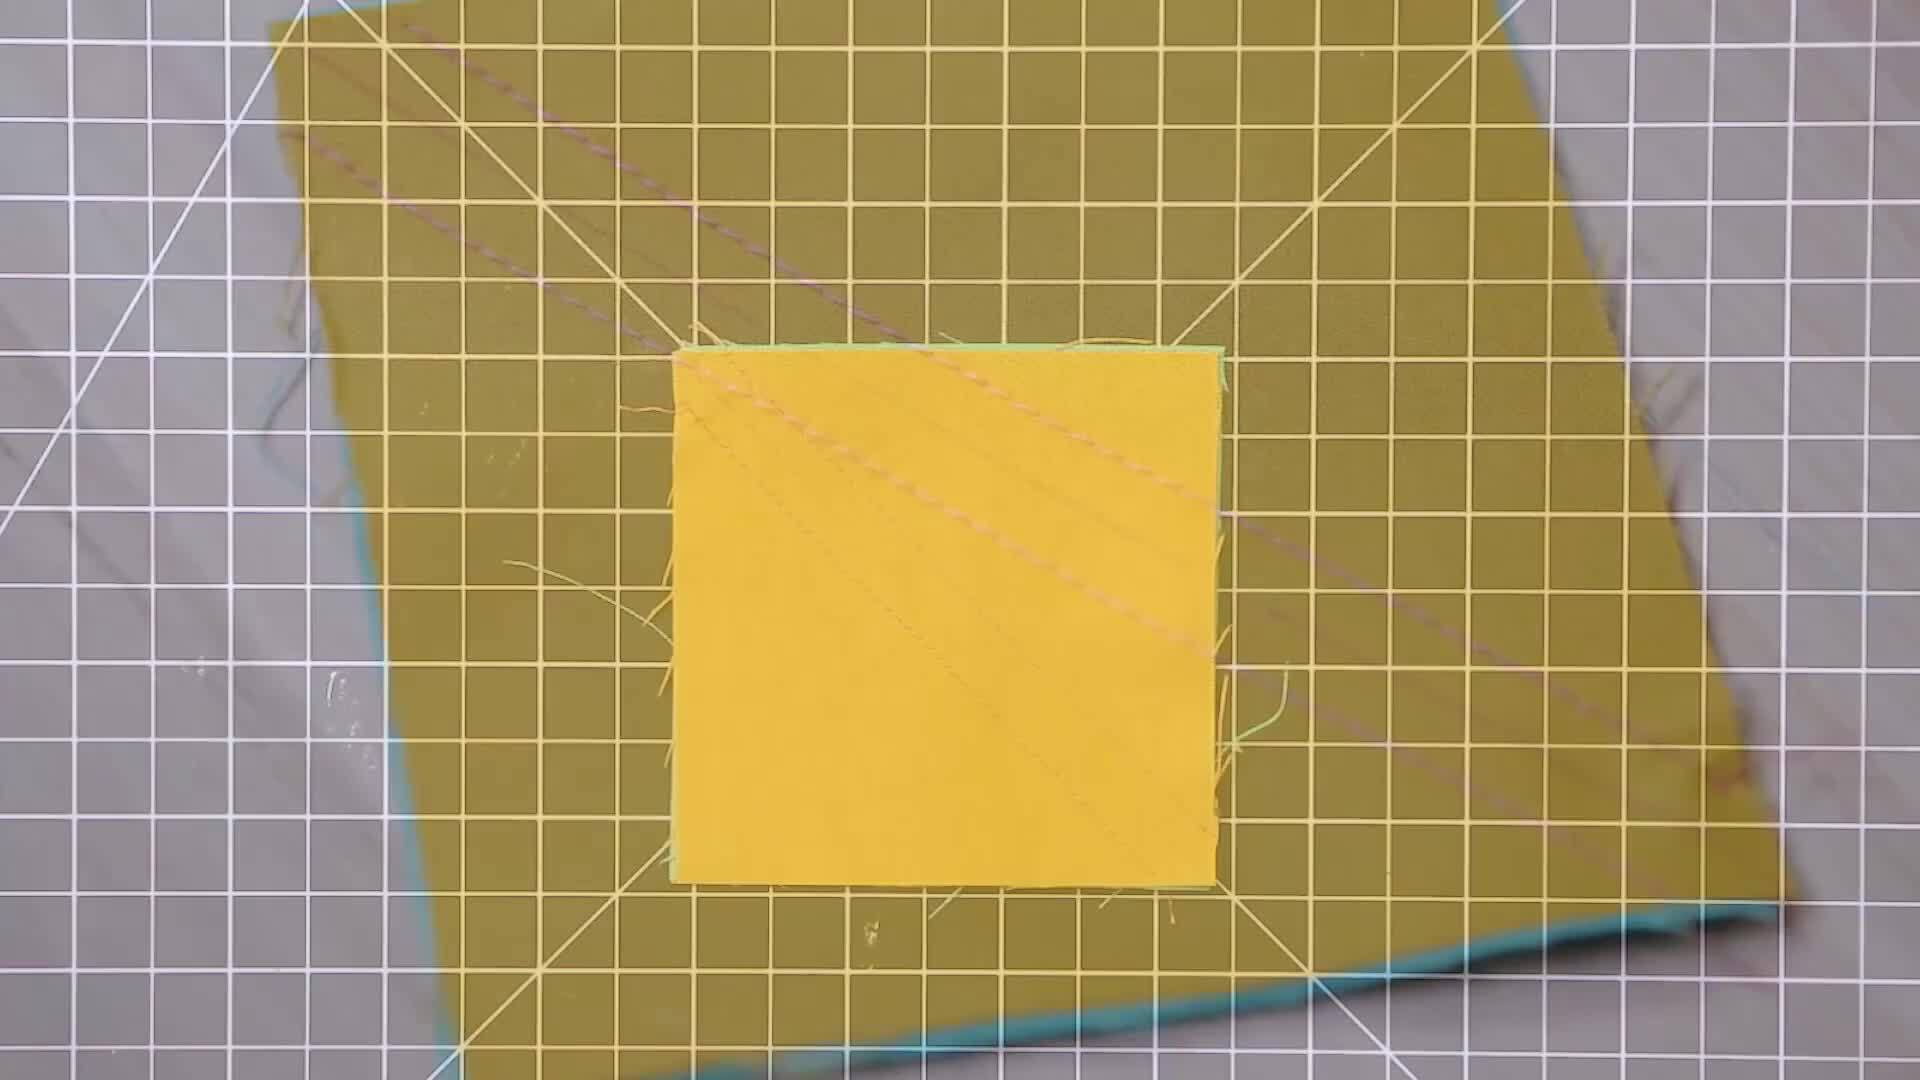 Making Half-Square Triangles